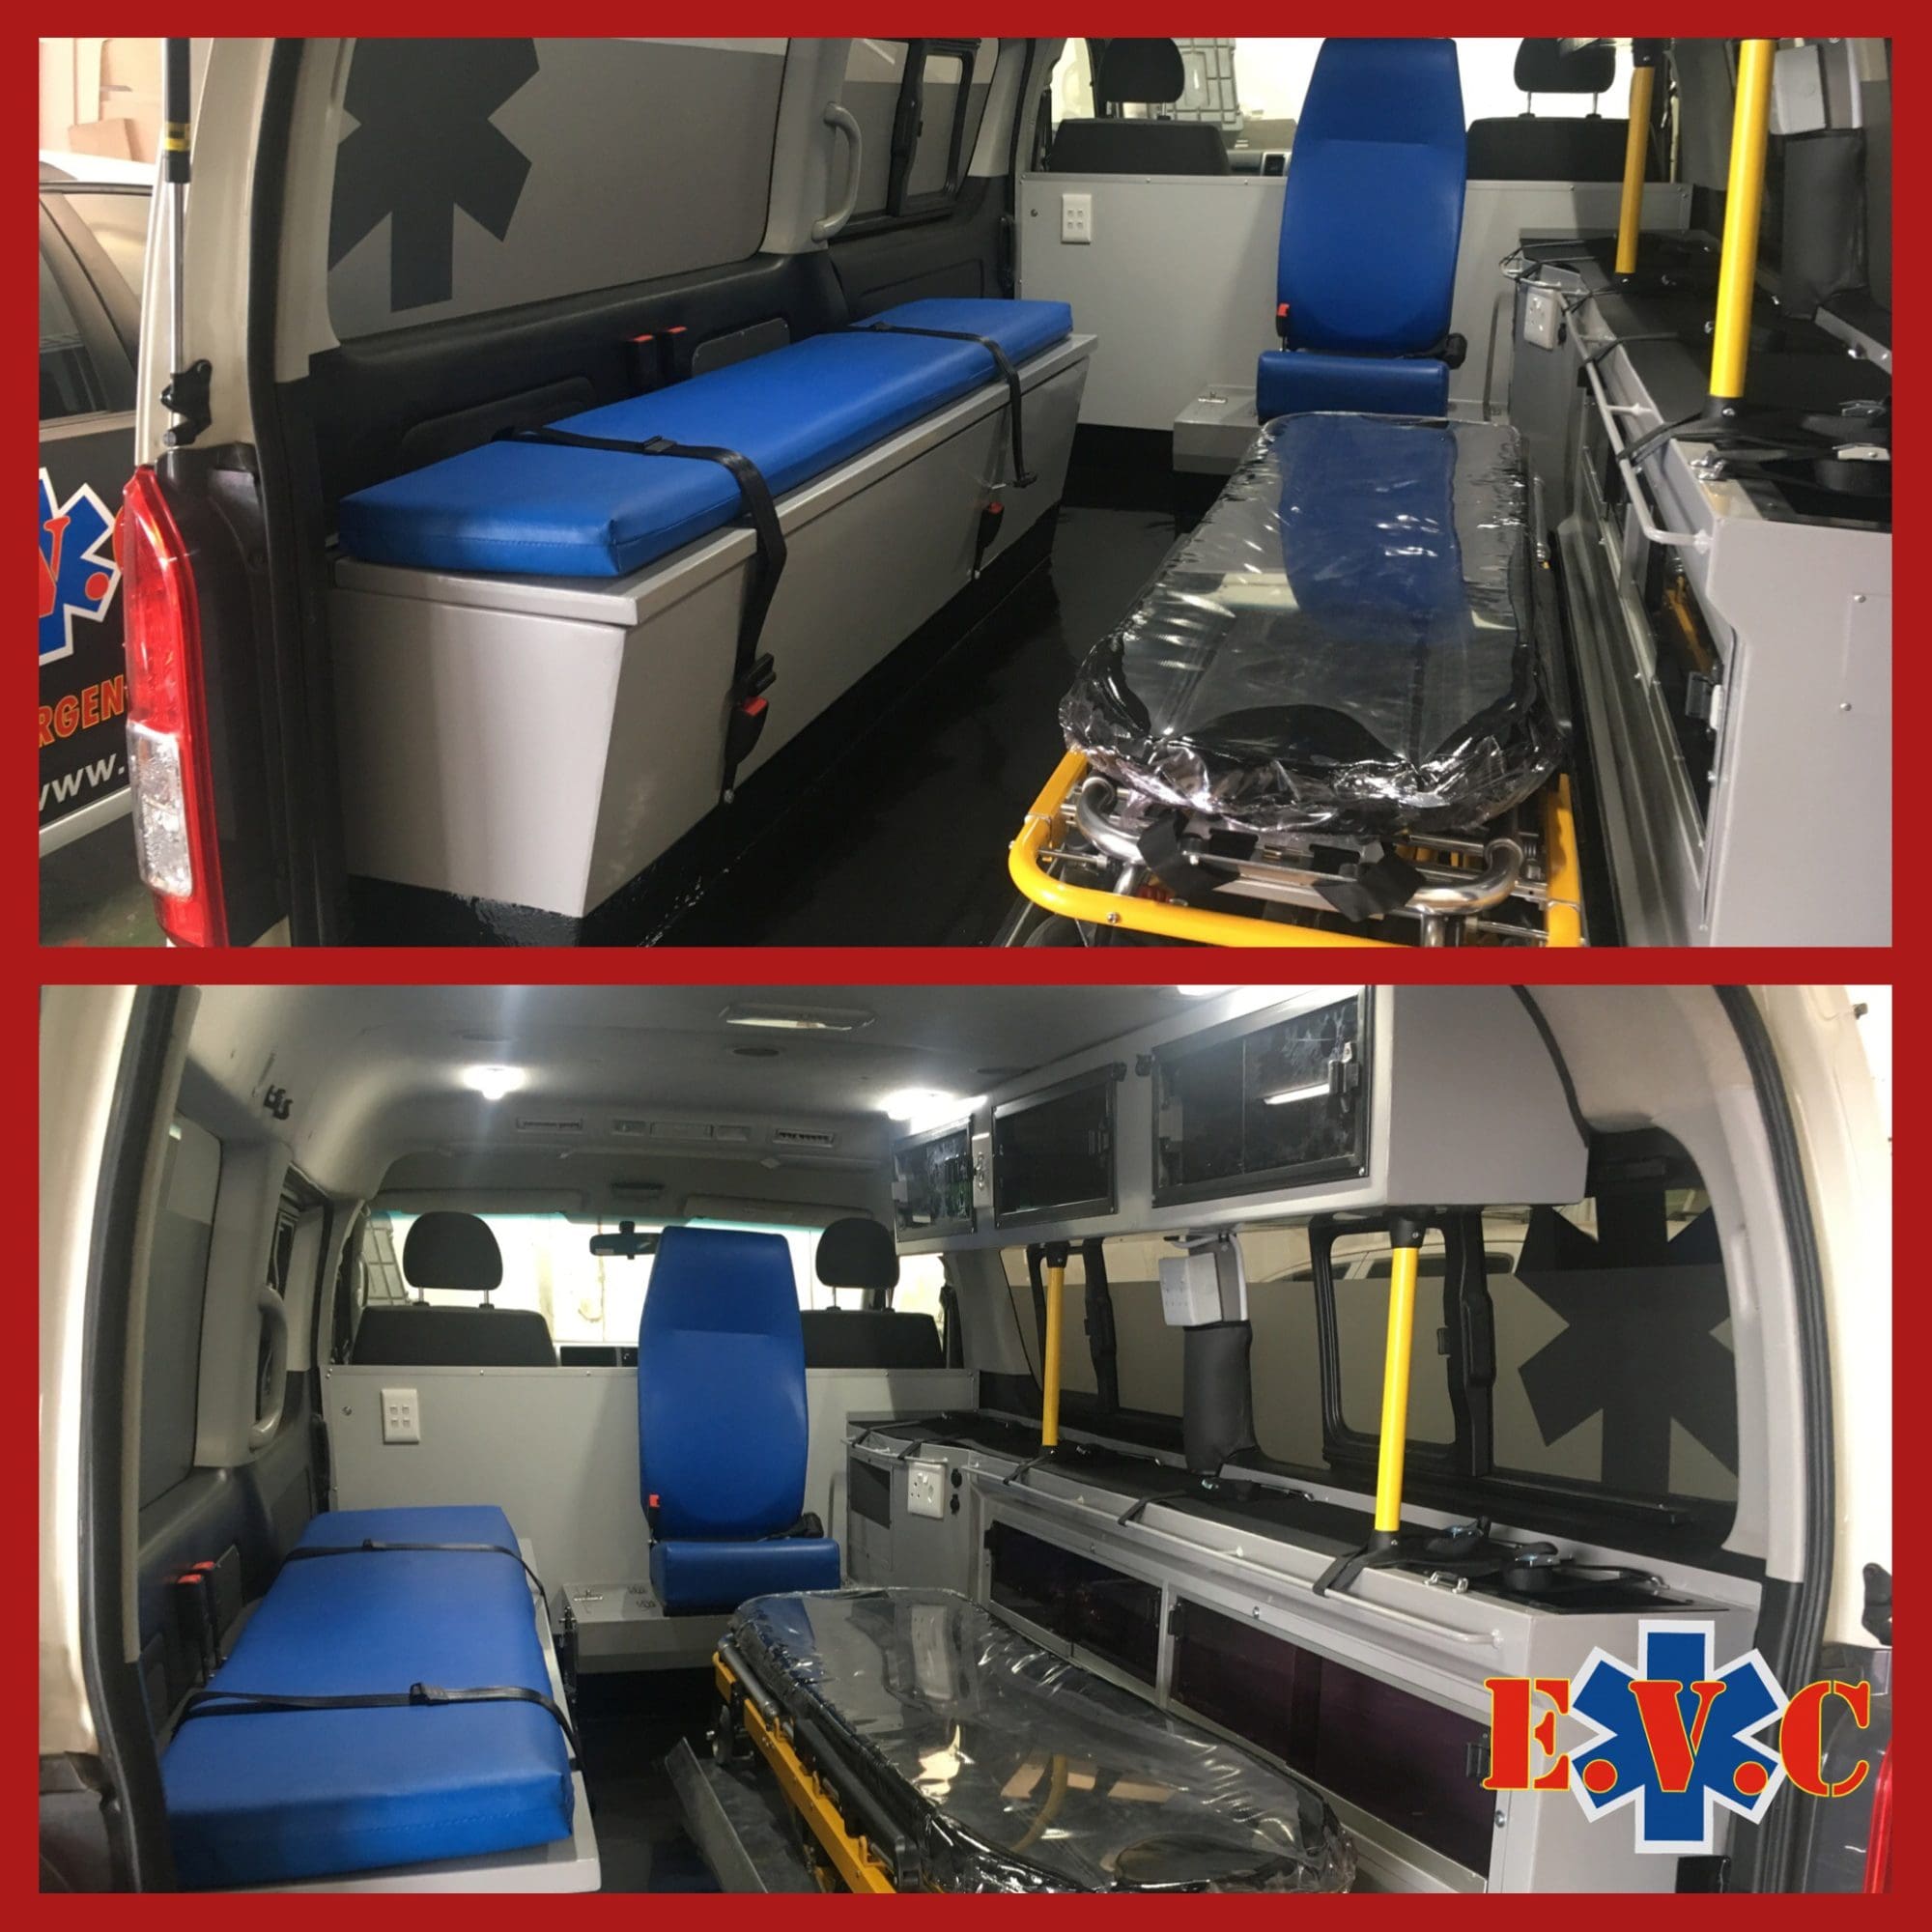 <h1>Toyota Quantum 10 Seater GL Ambulance</h1>